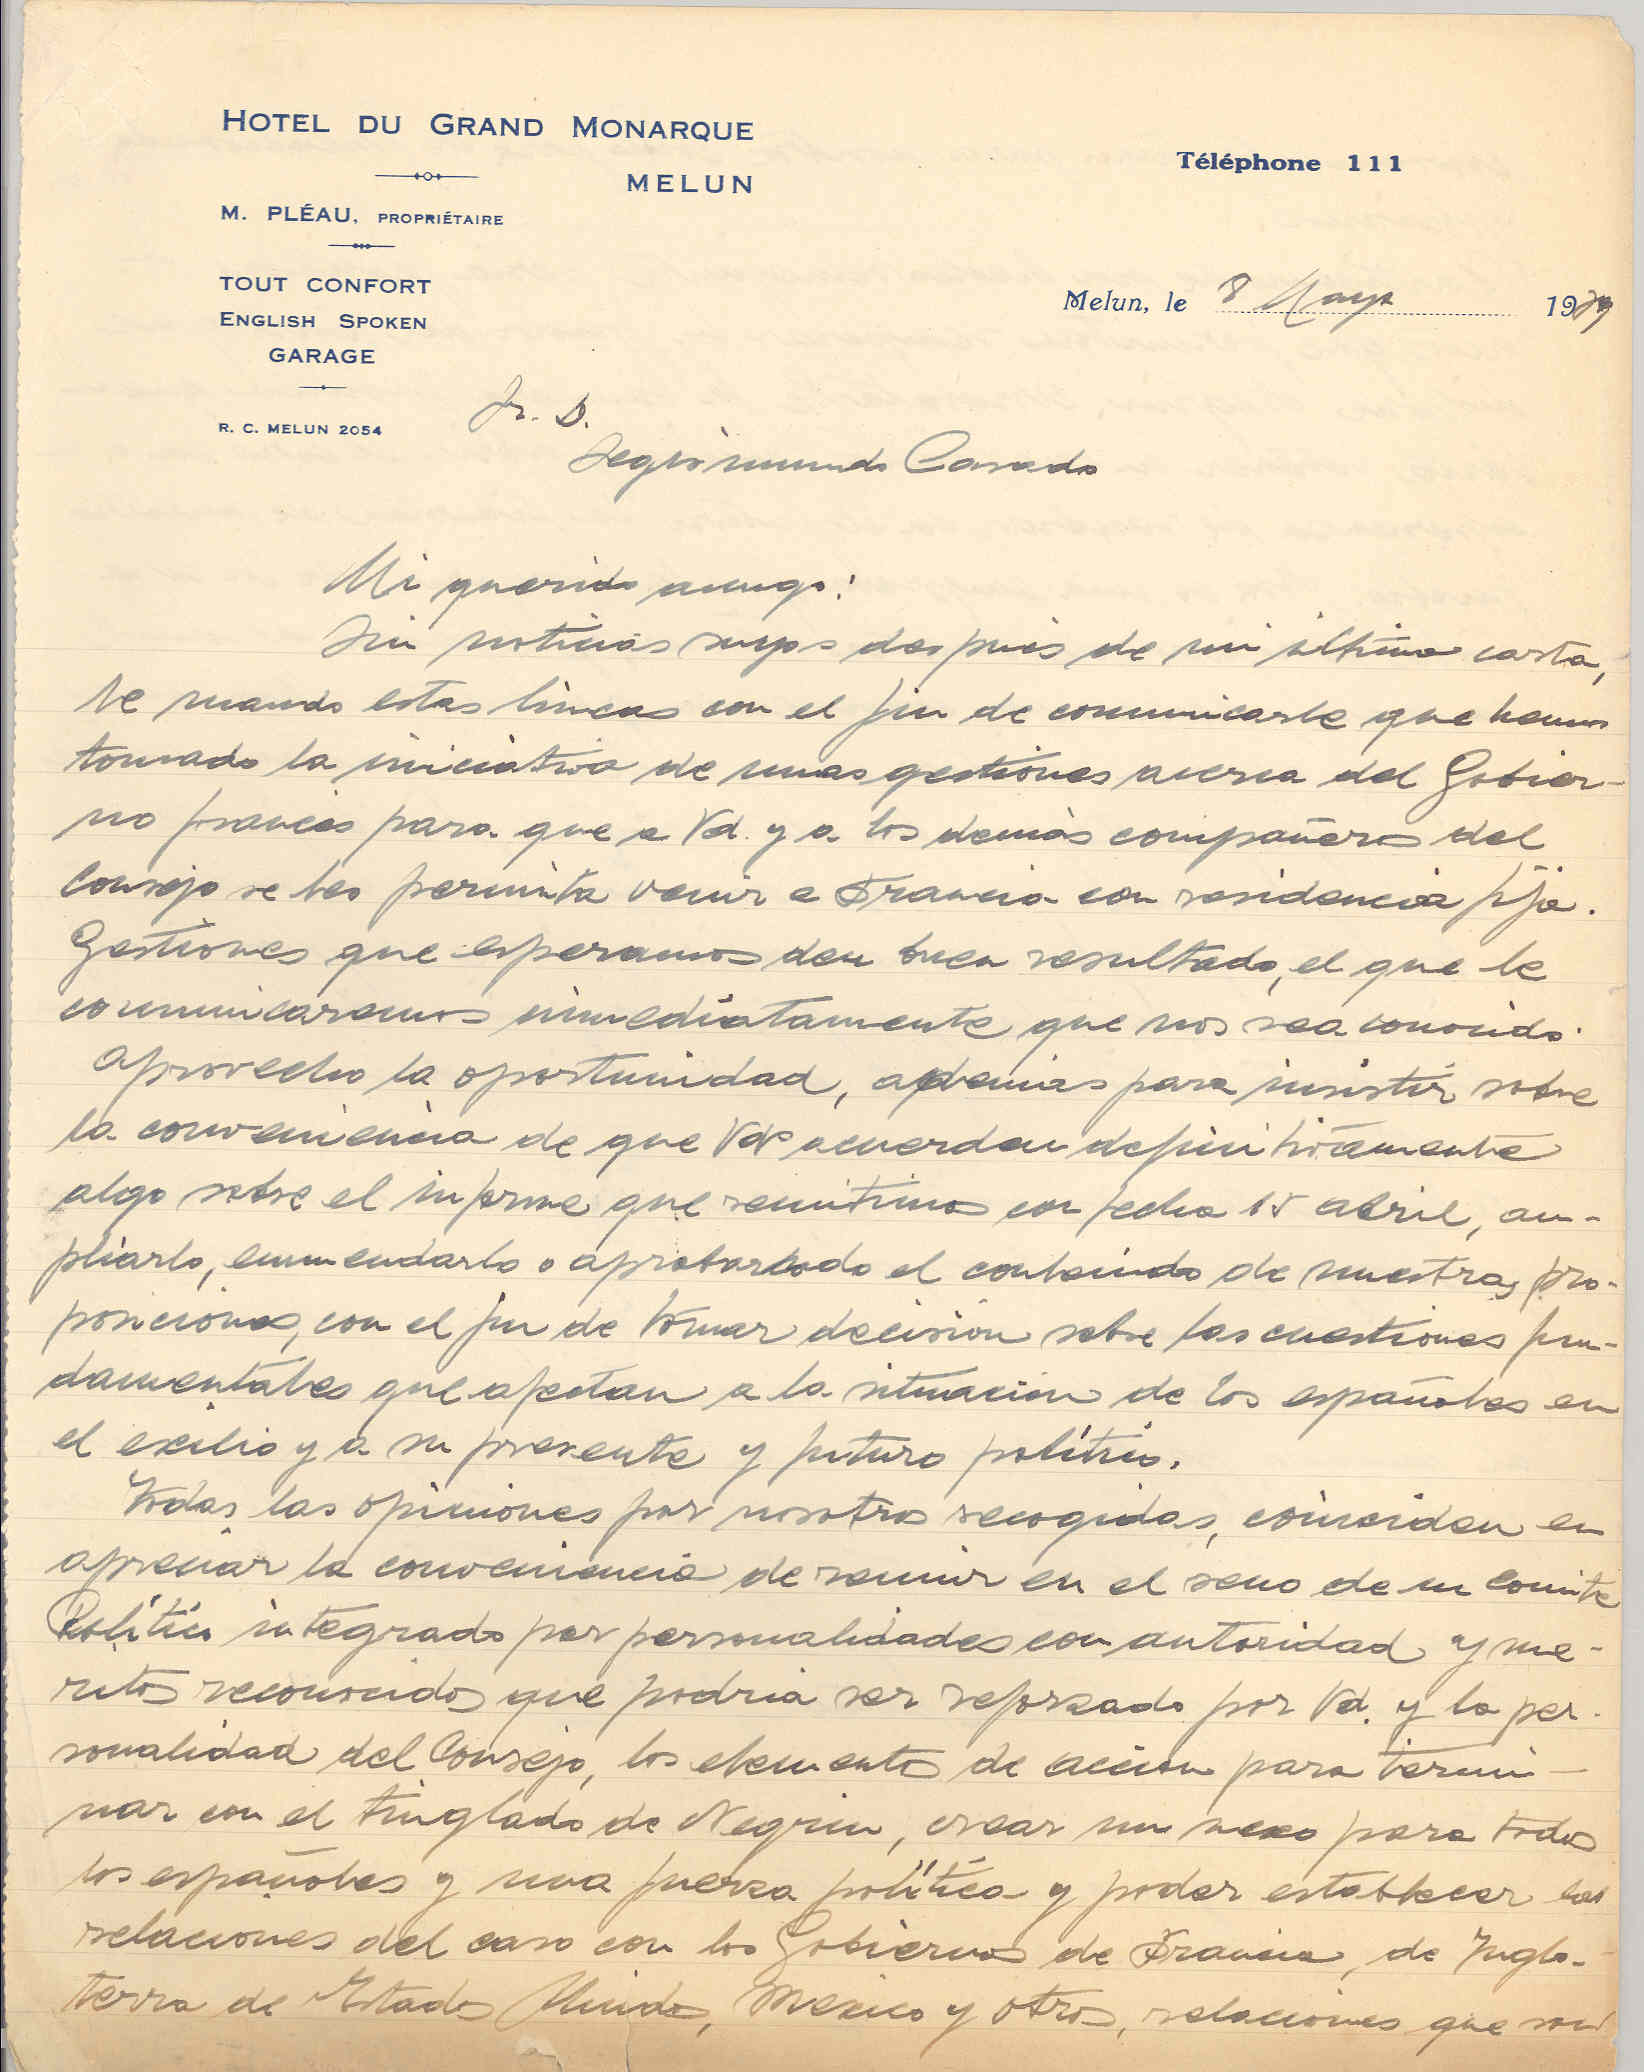 Carta a Segismundo Casado informando de gestiones con el gobierno francés y de la creación de un Comité Político para acabar con el tinglado Negrín.